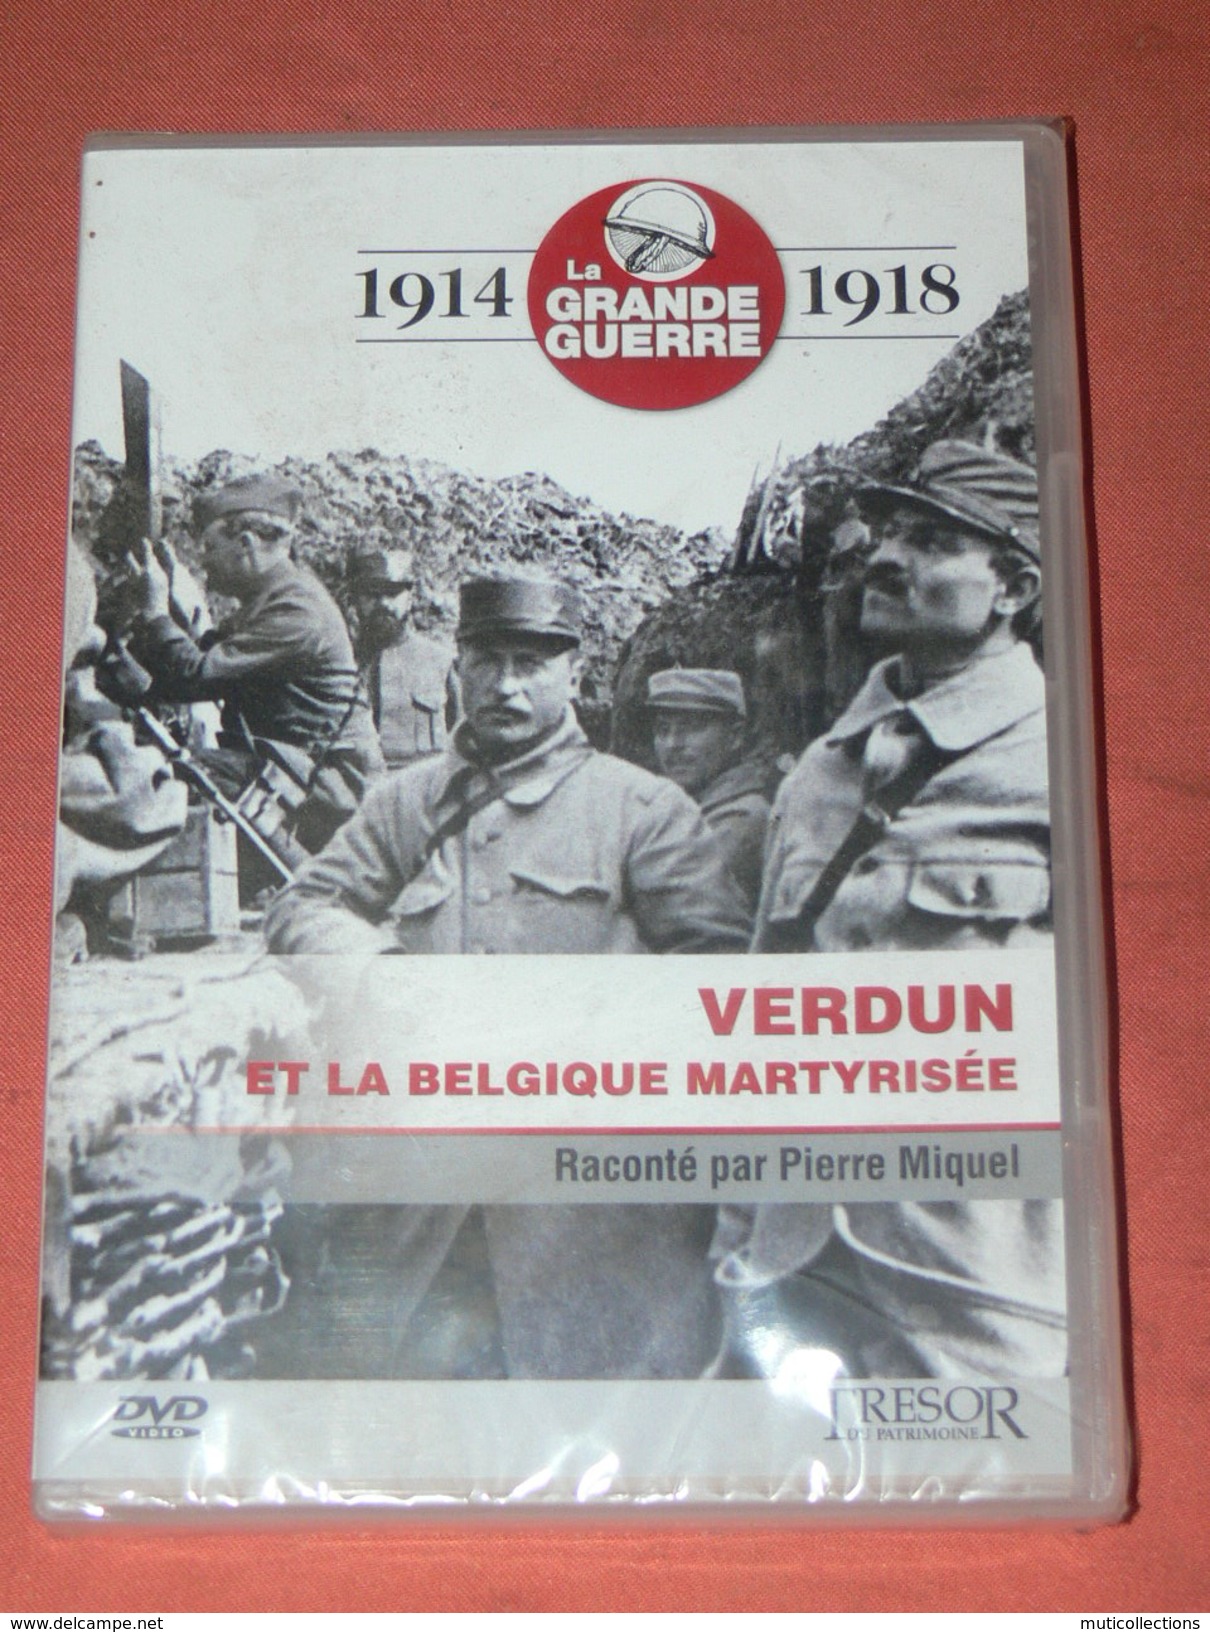 DVD  / 1914 / 1918 LA GRANDE GUERRE WWI   / VERDUN ET LA BELGIQUE MARTYRISEE /  DVD NEUF SOUS BLISTER - DVD Musicaux